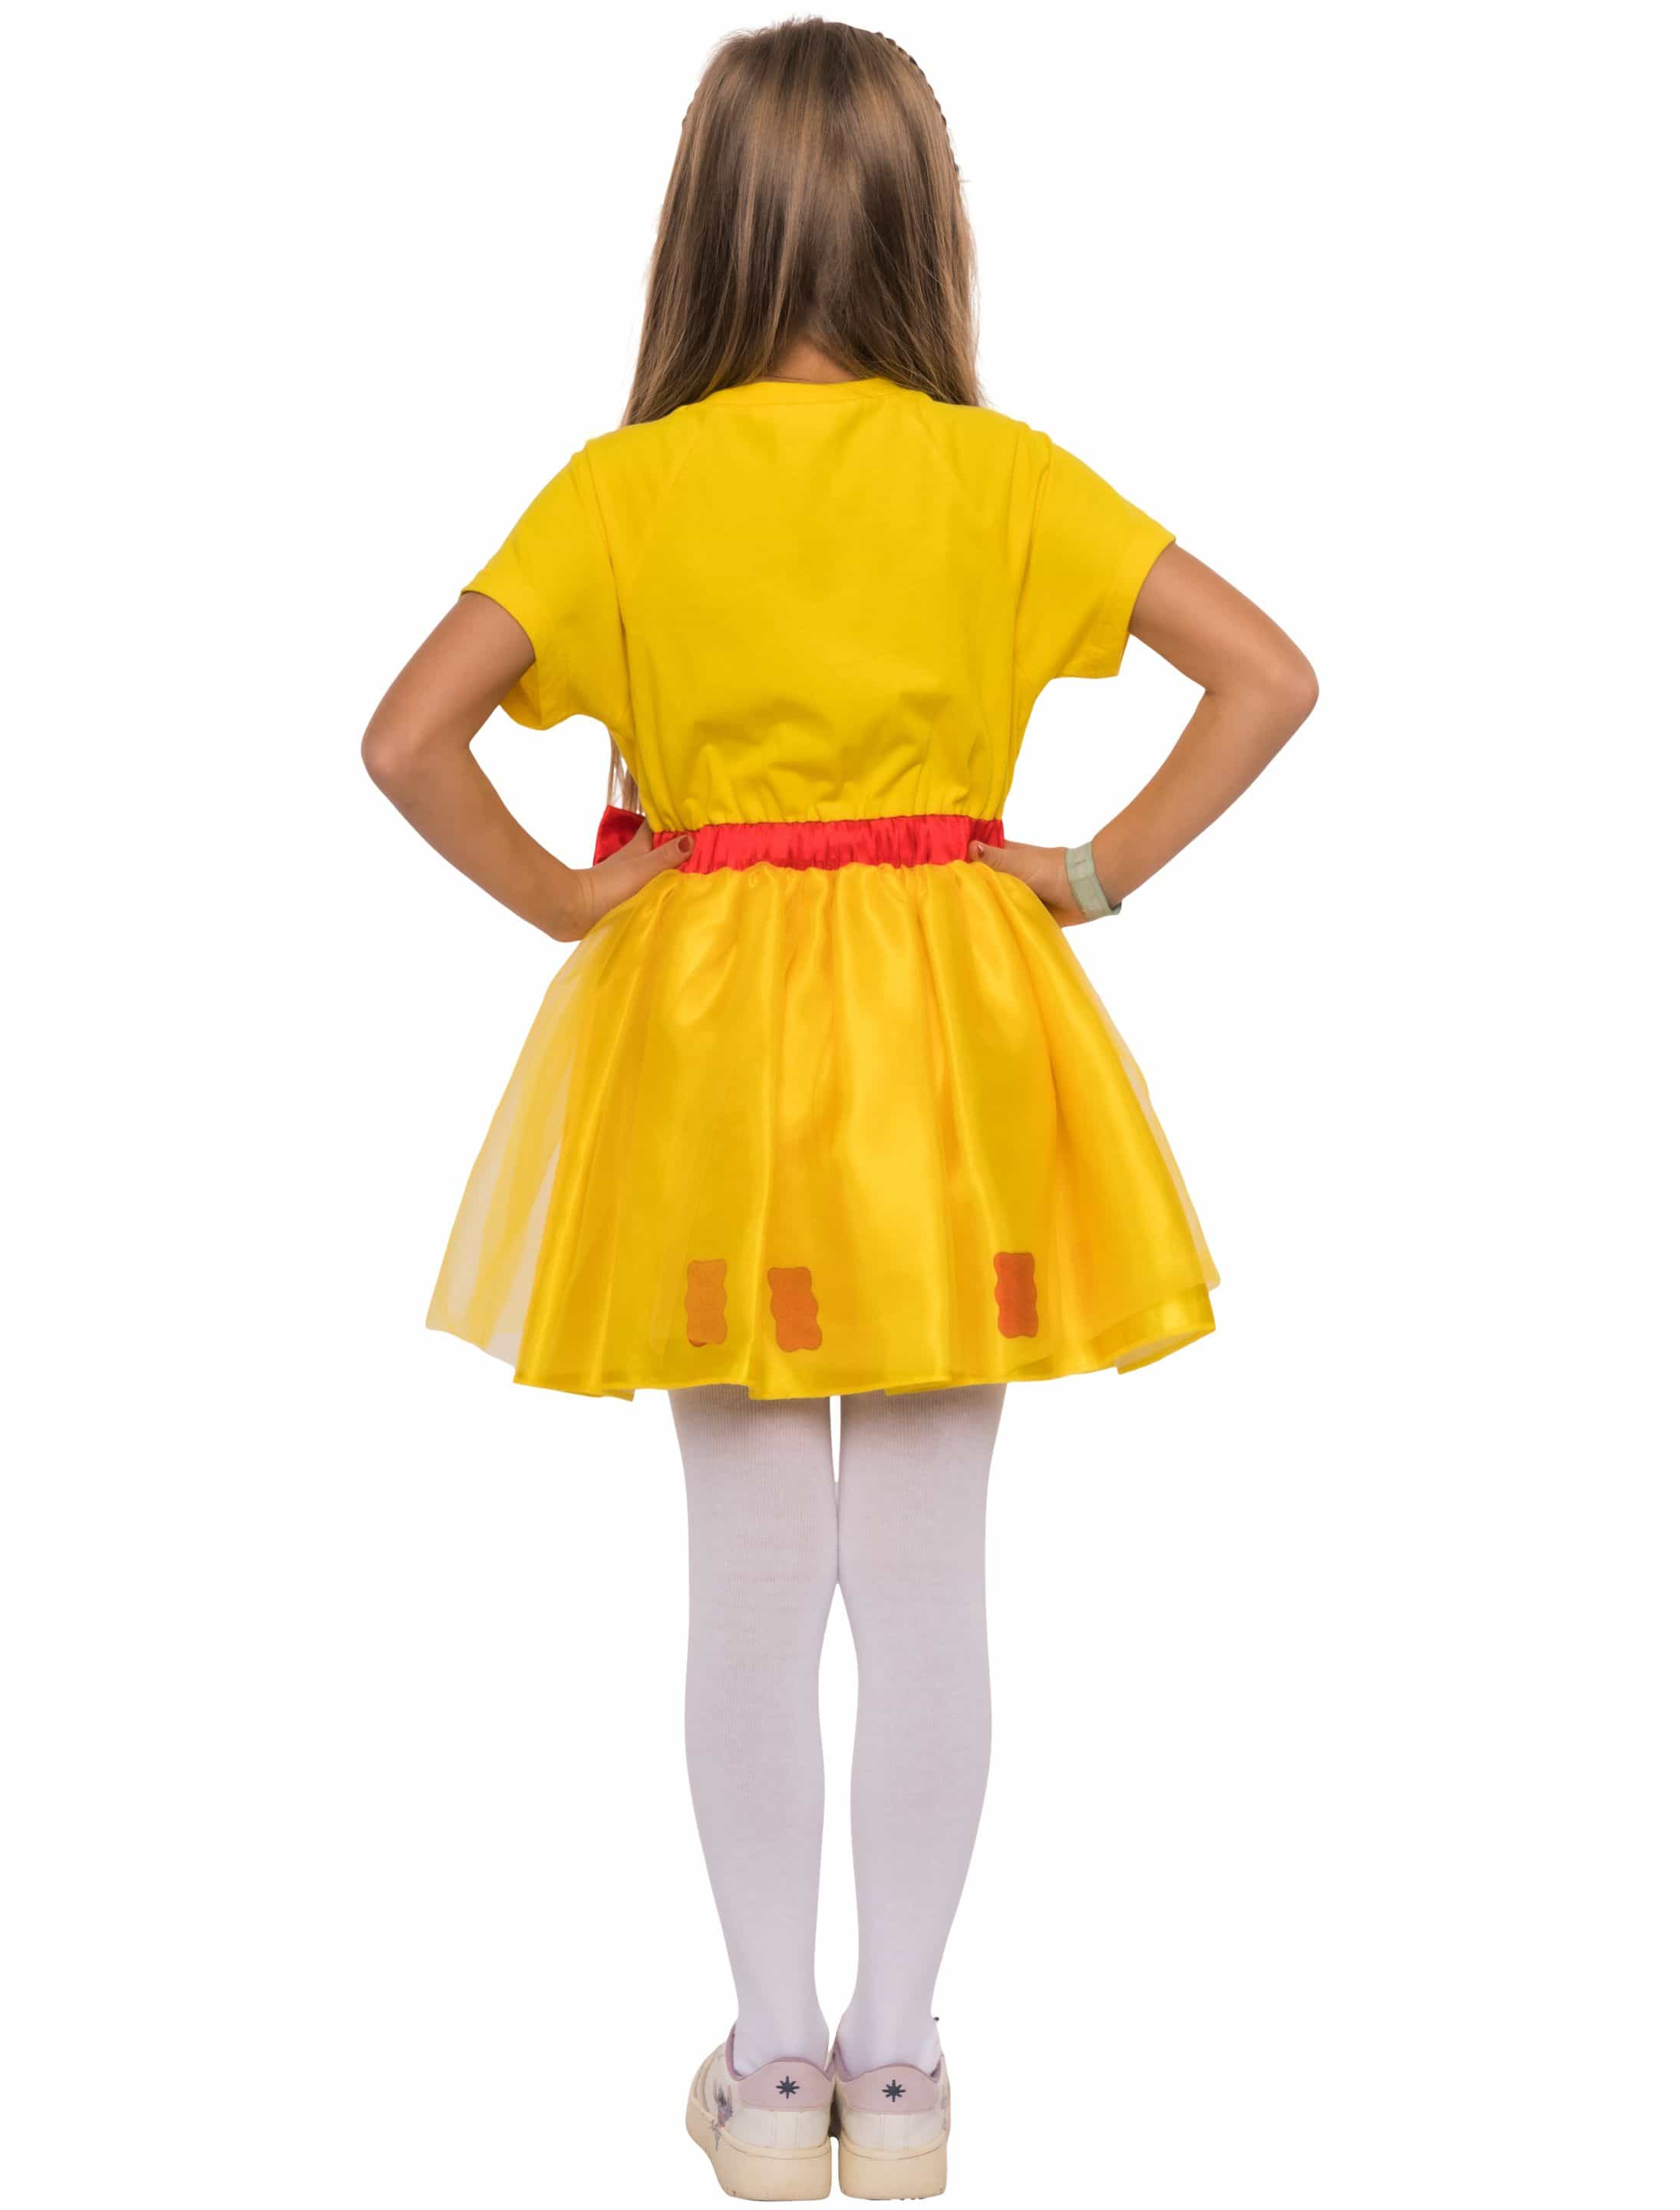 Kleid HARIBO Goldbären mit Schleife Kinder gelb 98/104